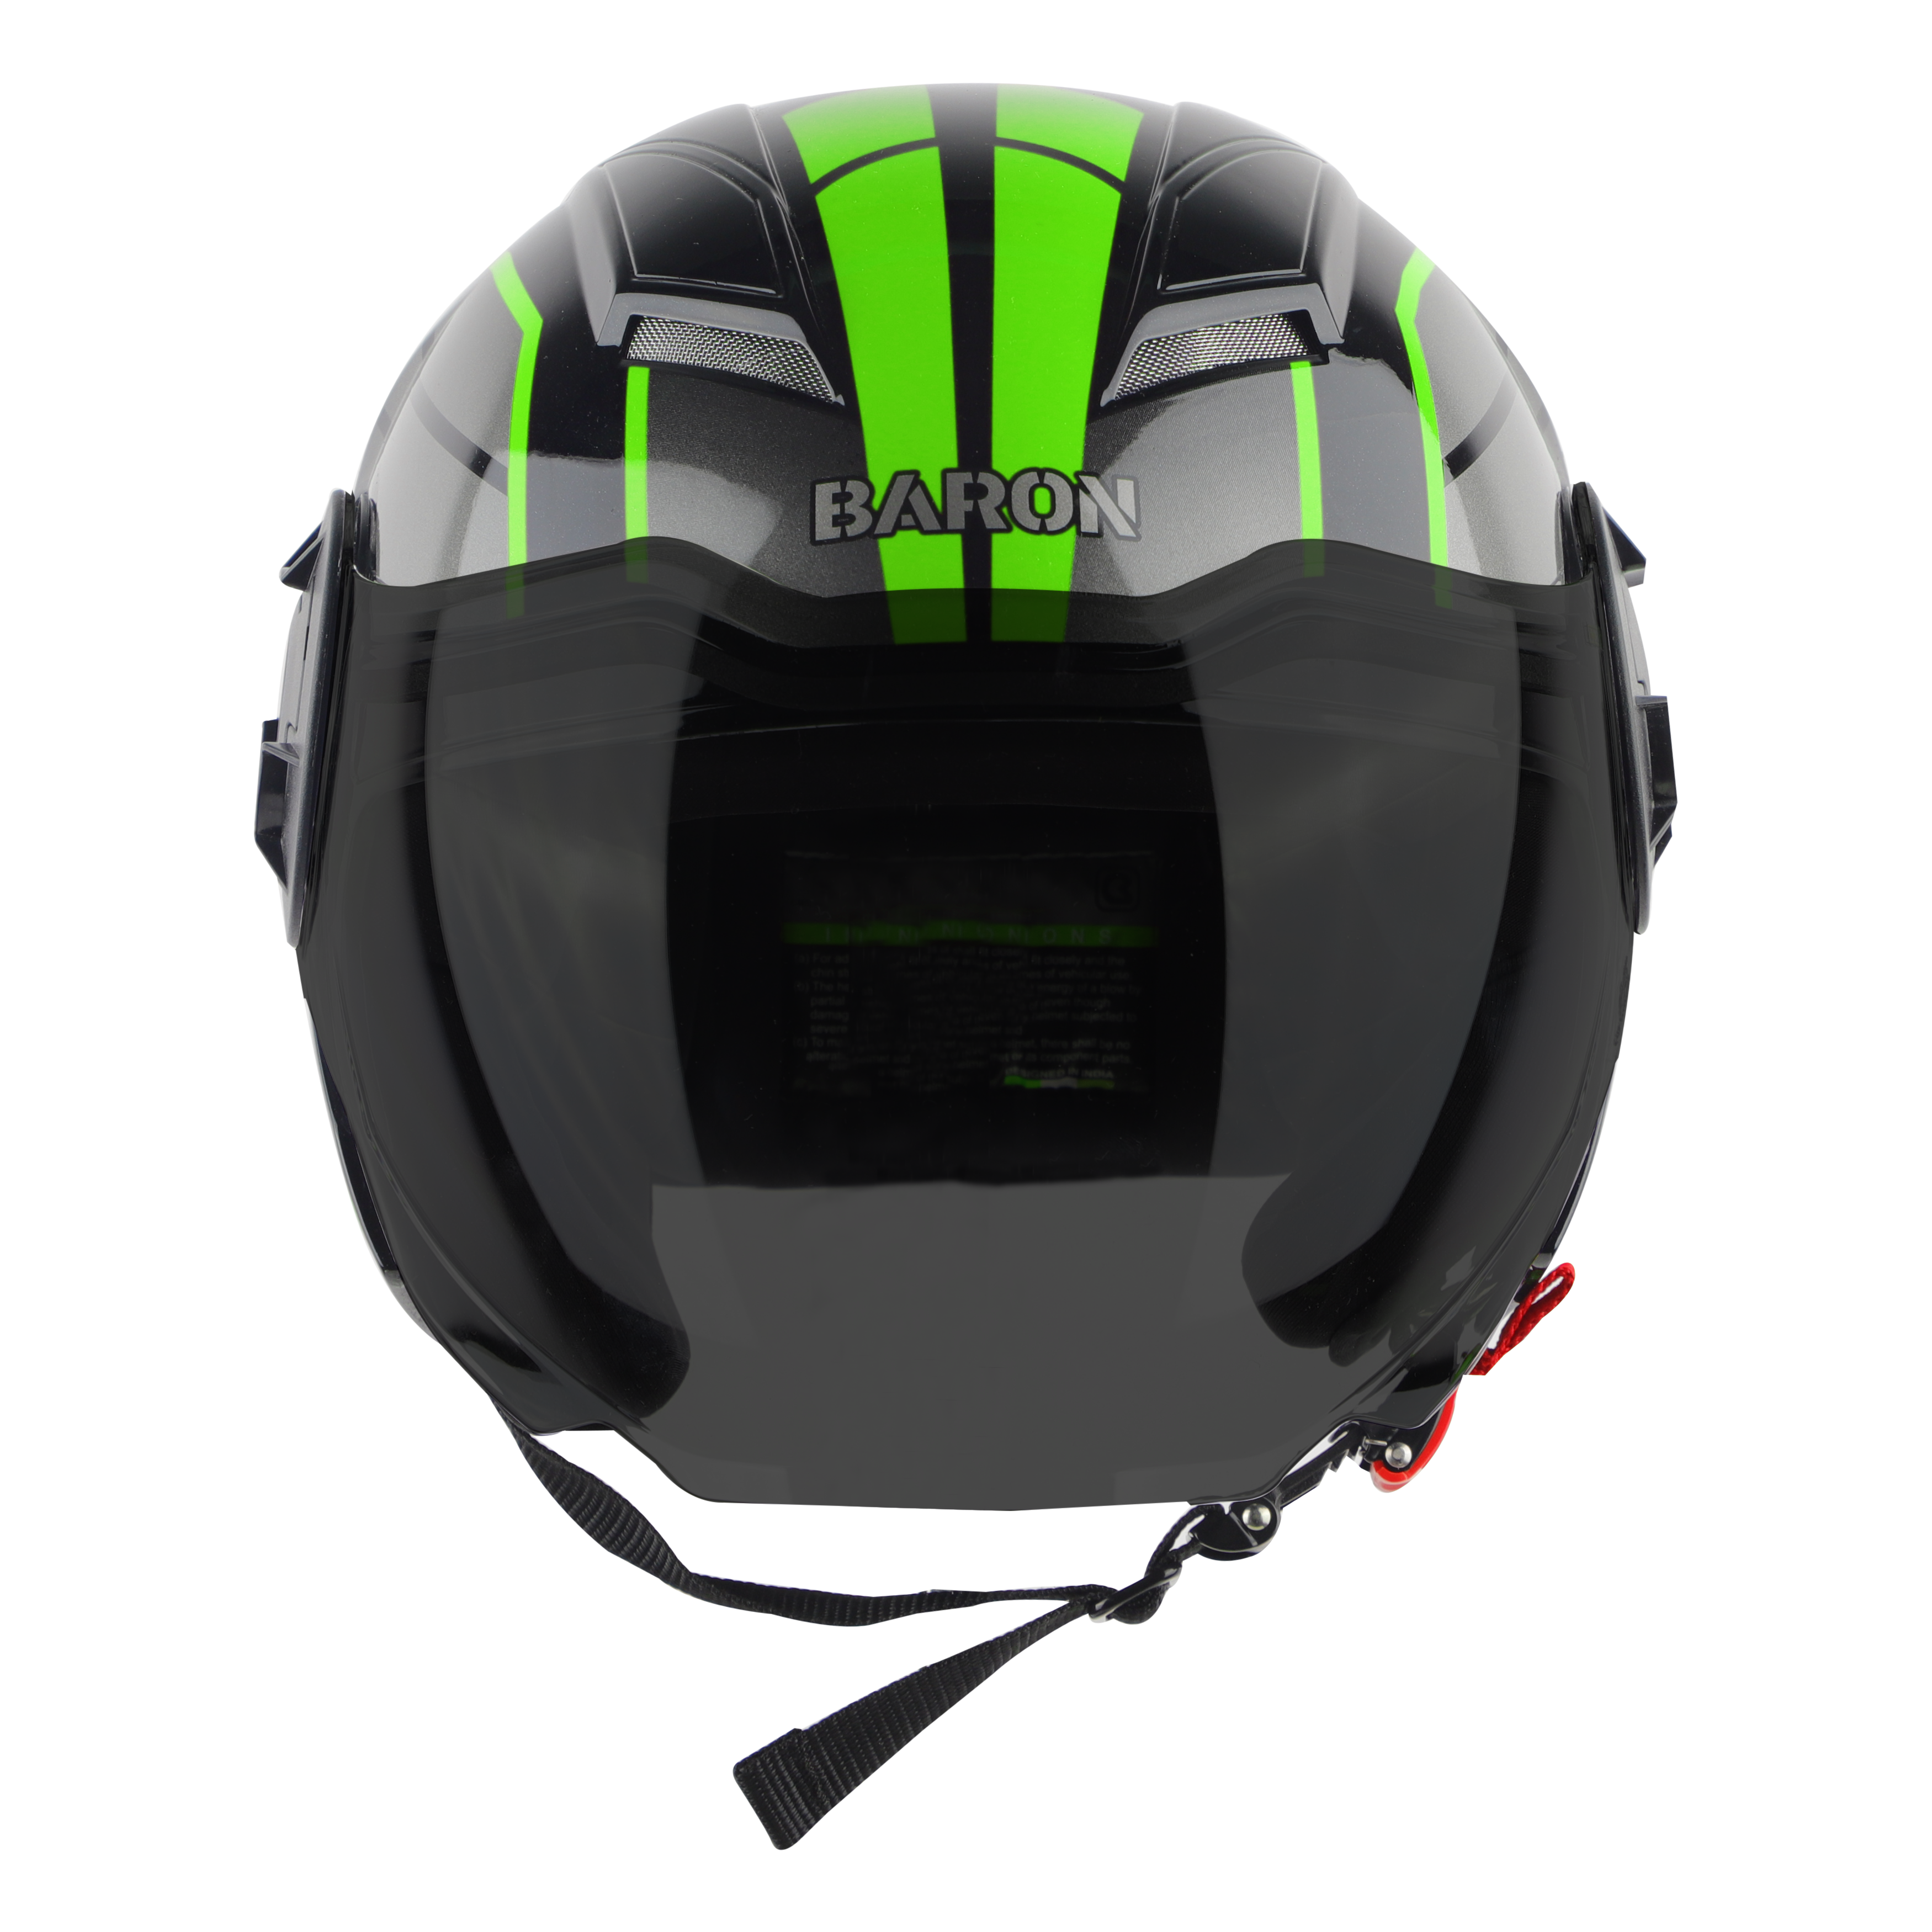 Steelbird SBH-31 Baron ISI Certified Open Face Helmet For Men And Women (Matt Black Green With Smoke Visor)